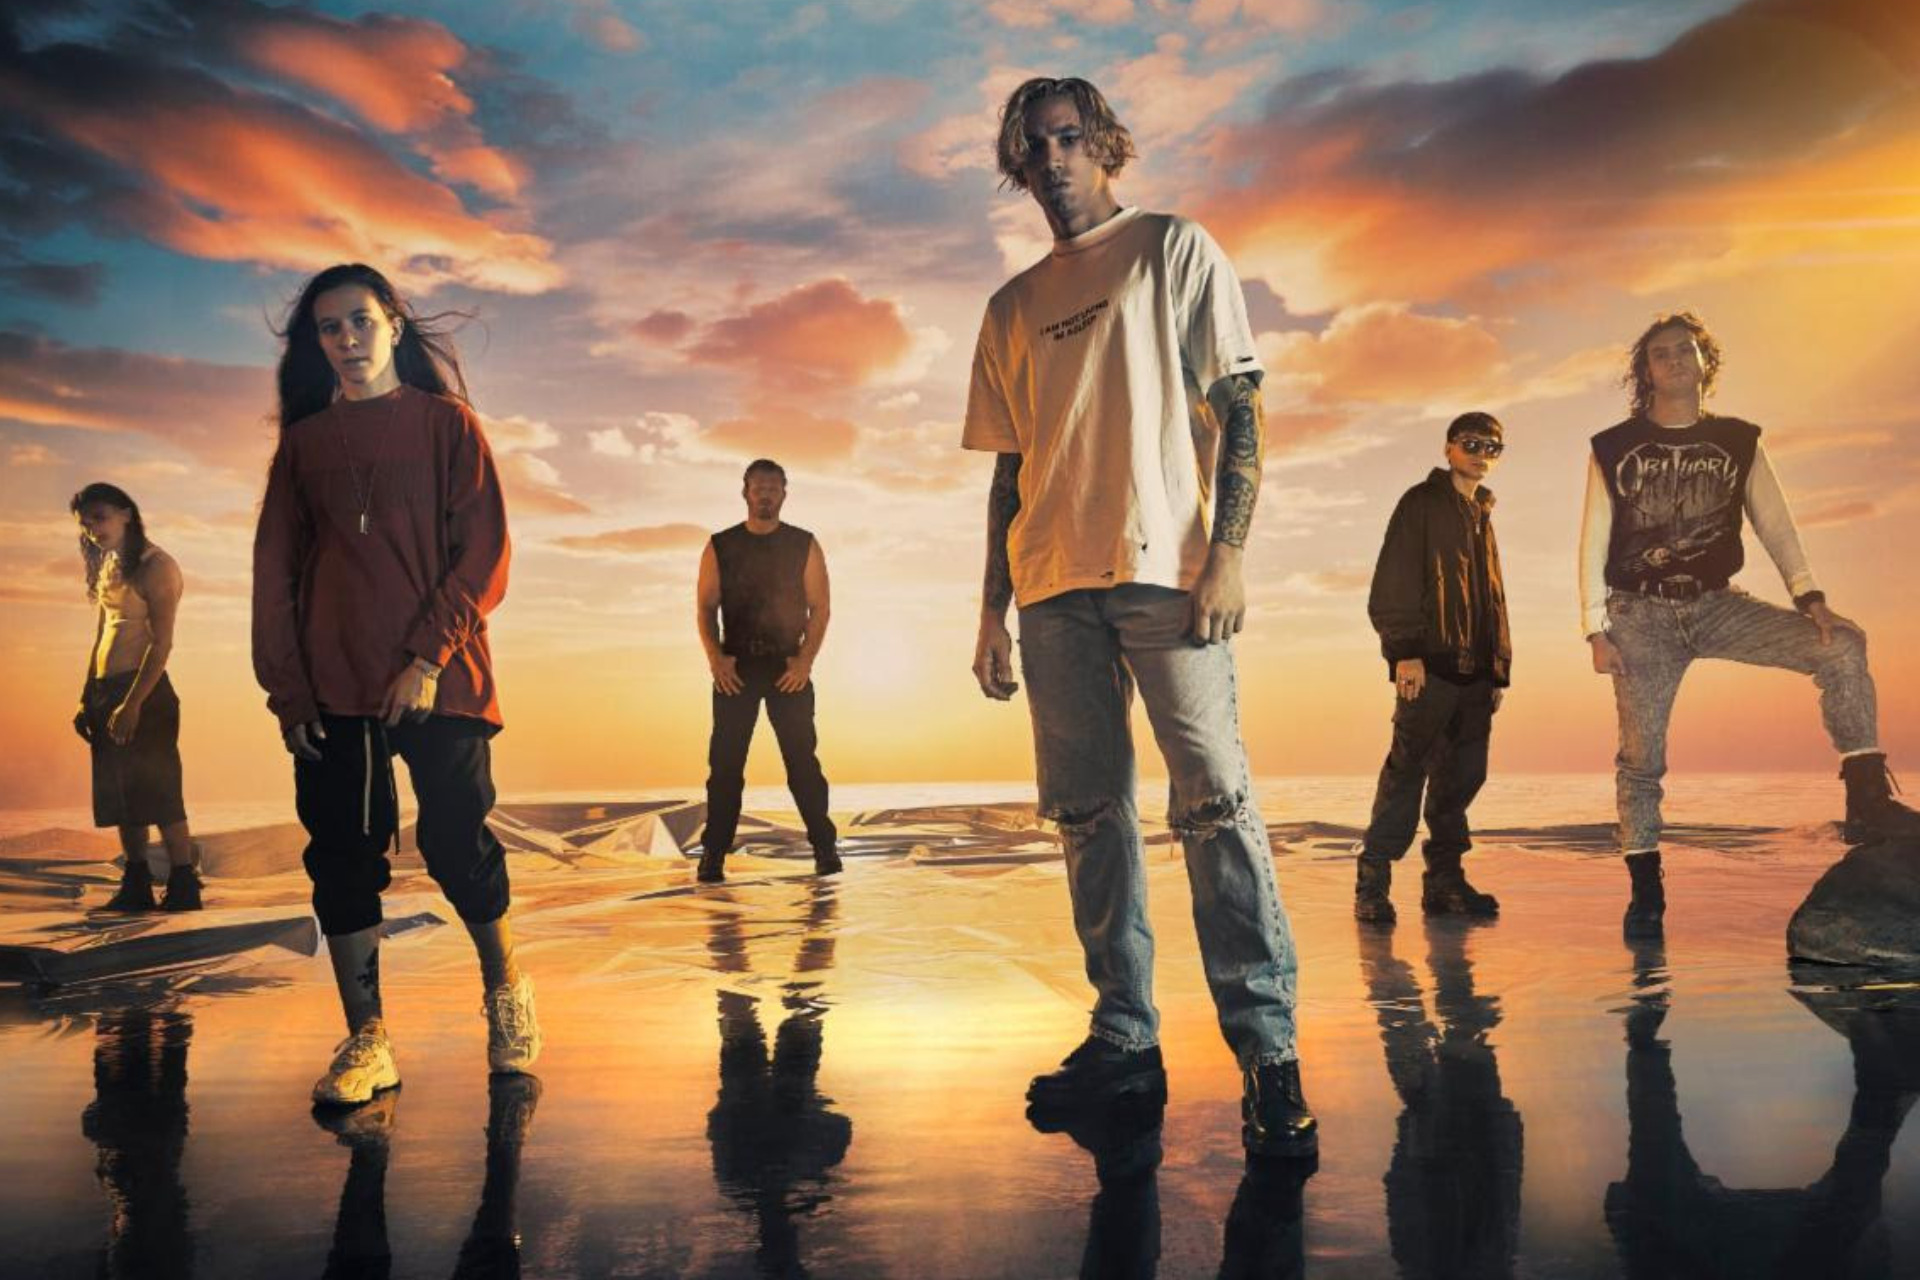 Code Orange lanza su nuevo sencillo “Mirror” como adelanto de su próximo álbum “The Above”